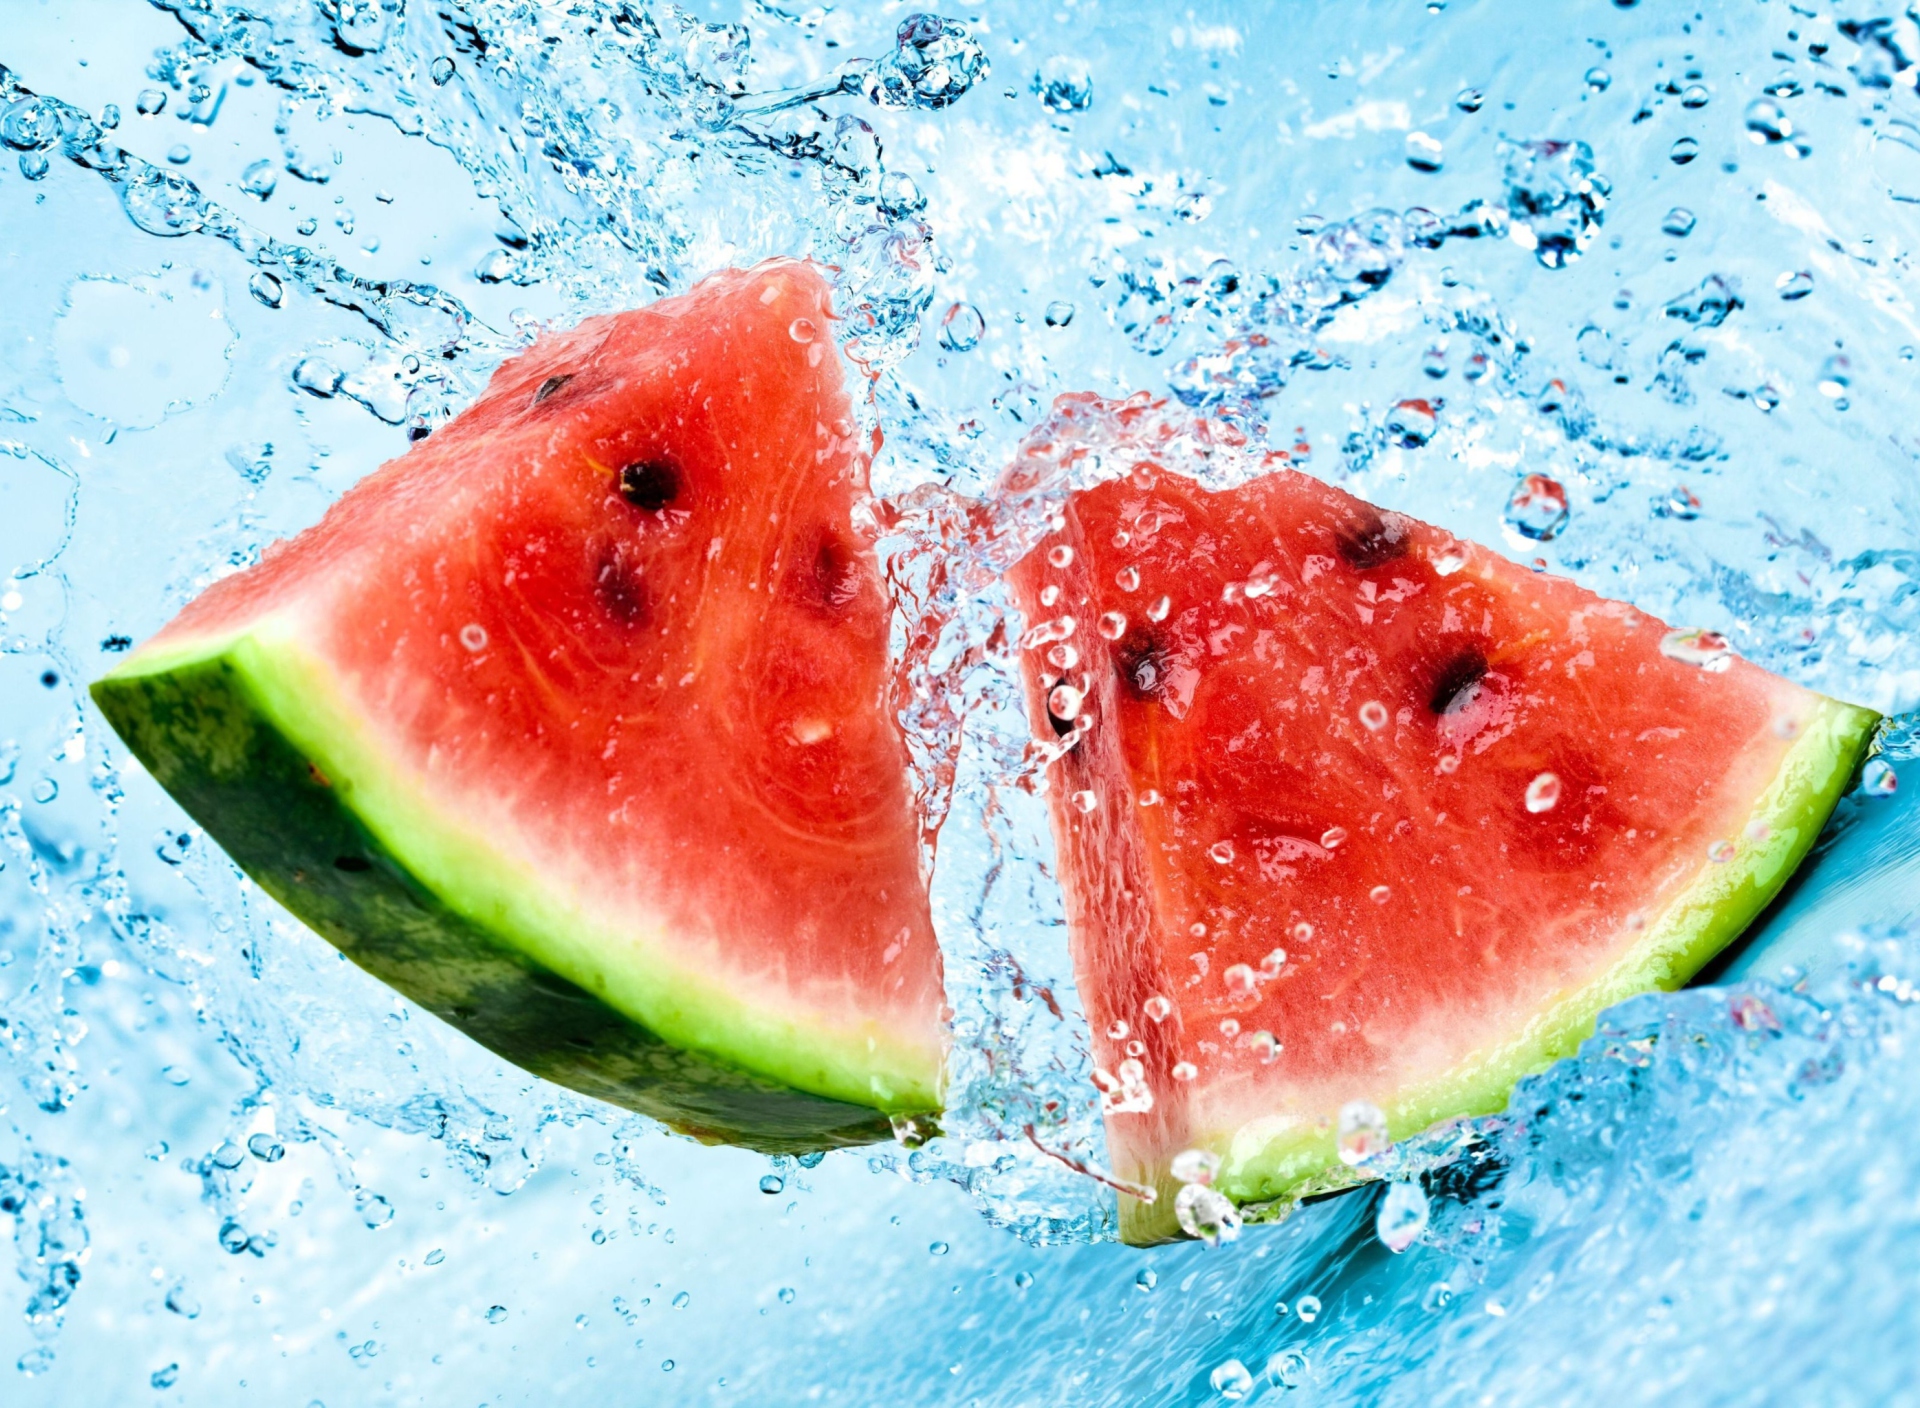 Обои Watermelon In Water 1920x1408